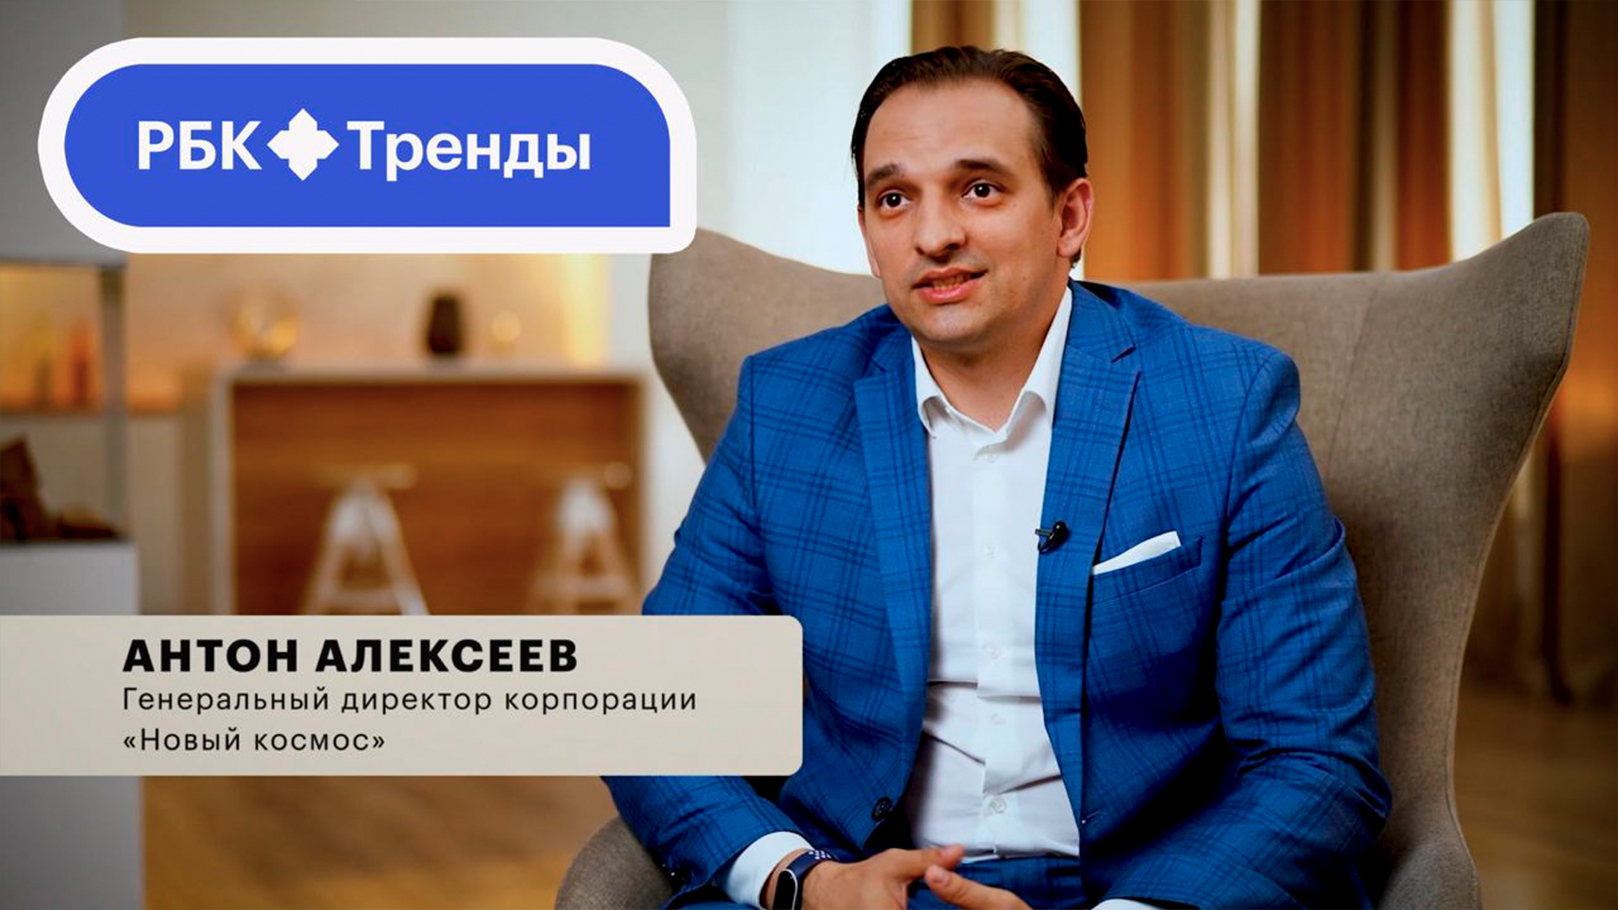 РБК: проект Окулус как пример технологических стартапов в России